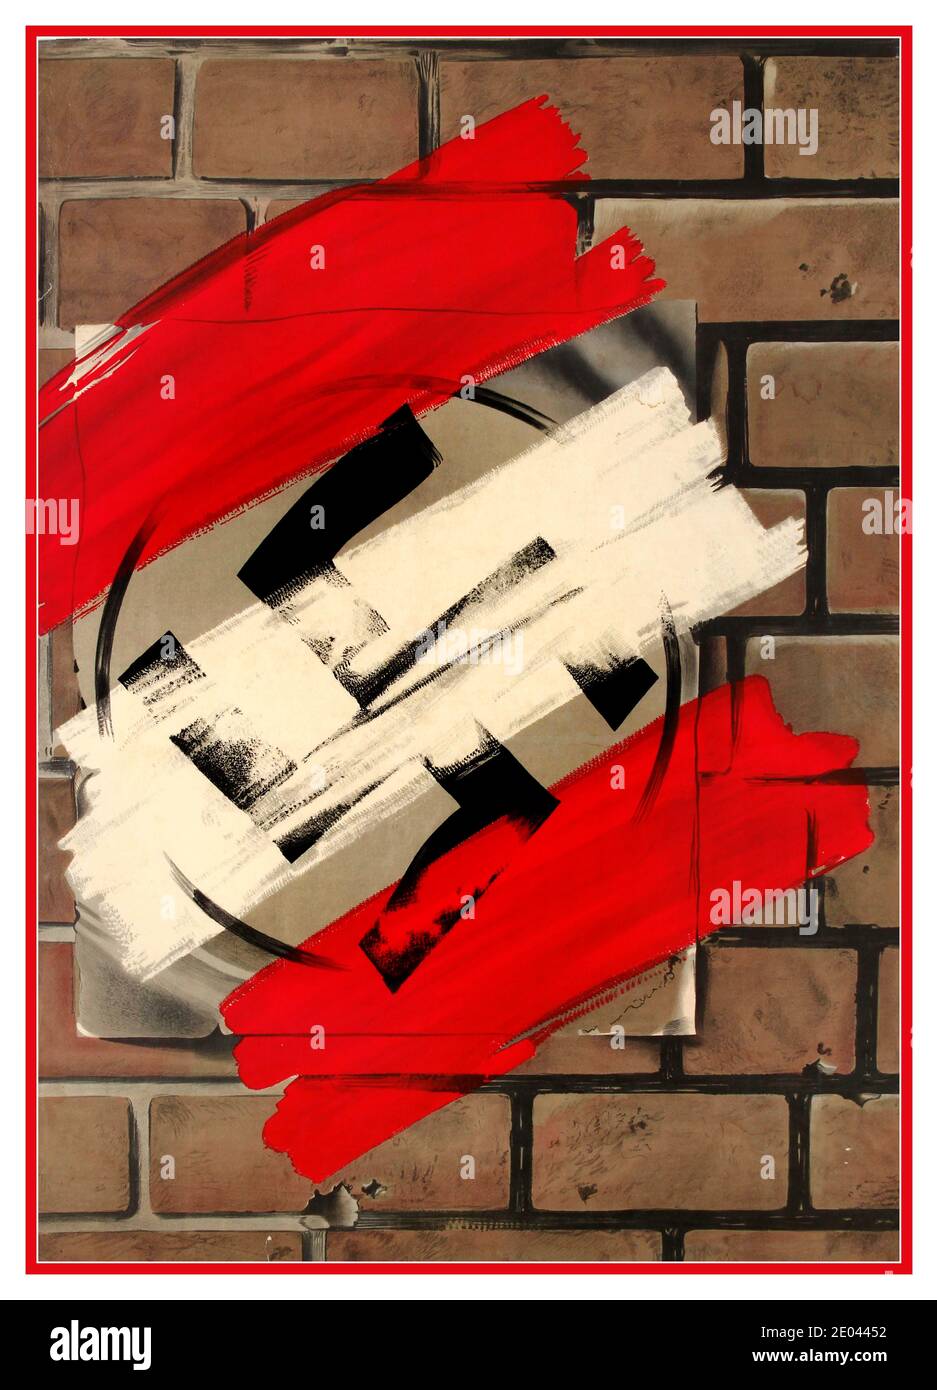 DÄNEMARK WW2 Vintage Weltkrieg zwei Anti-Nazi-Propaganda-Plakat zeigt ein Nazi-Hakenkreuz-Plakat auf einer Backsteinwand mit Streifen von rot und weiß Farbe bedeckt, um die dänische Flagge und den totalen Sieg über Deutschland Nazi und Nazismus zu symbolisieren. Dänemark 1945 Stockfoto